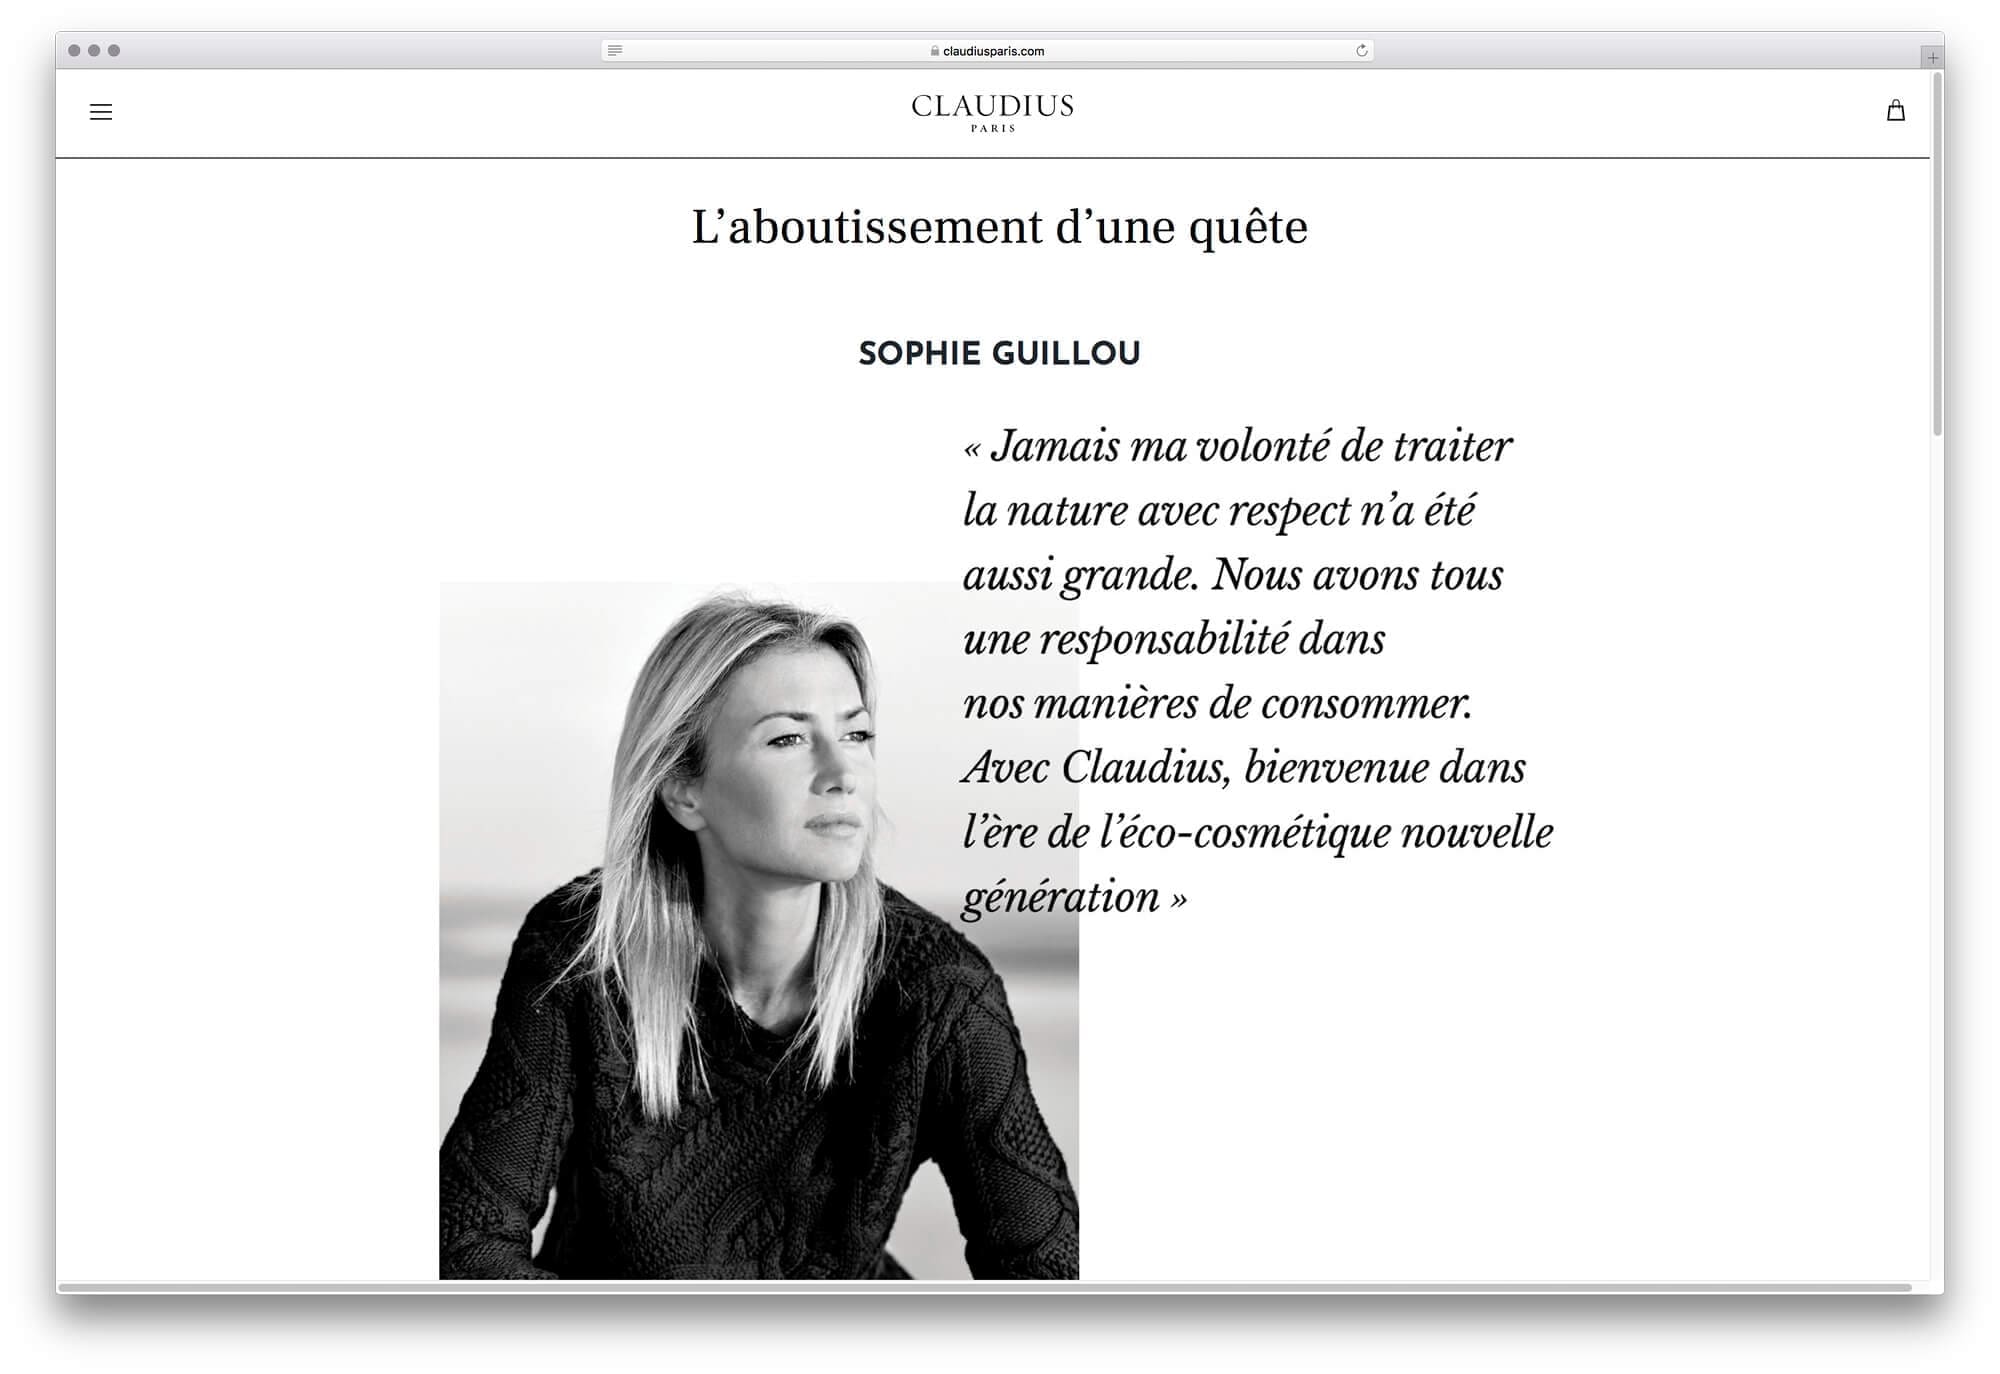 Site internet de Claudius, page histoire la marque et de sa fondatrice Sophie Guillou, design par Ichekar